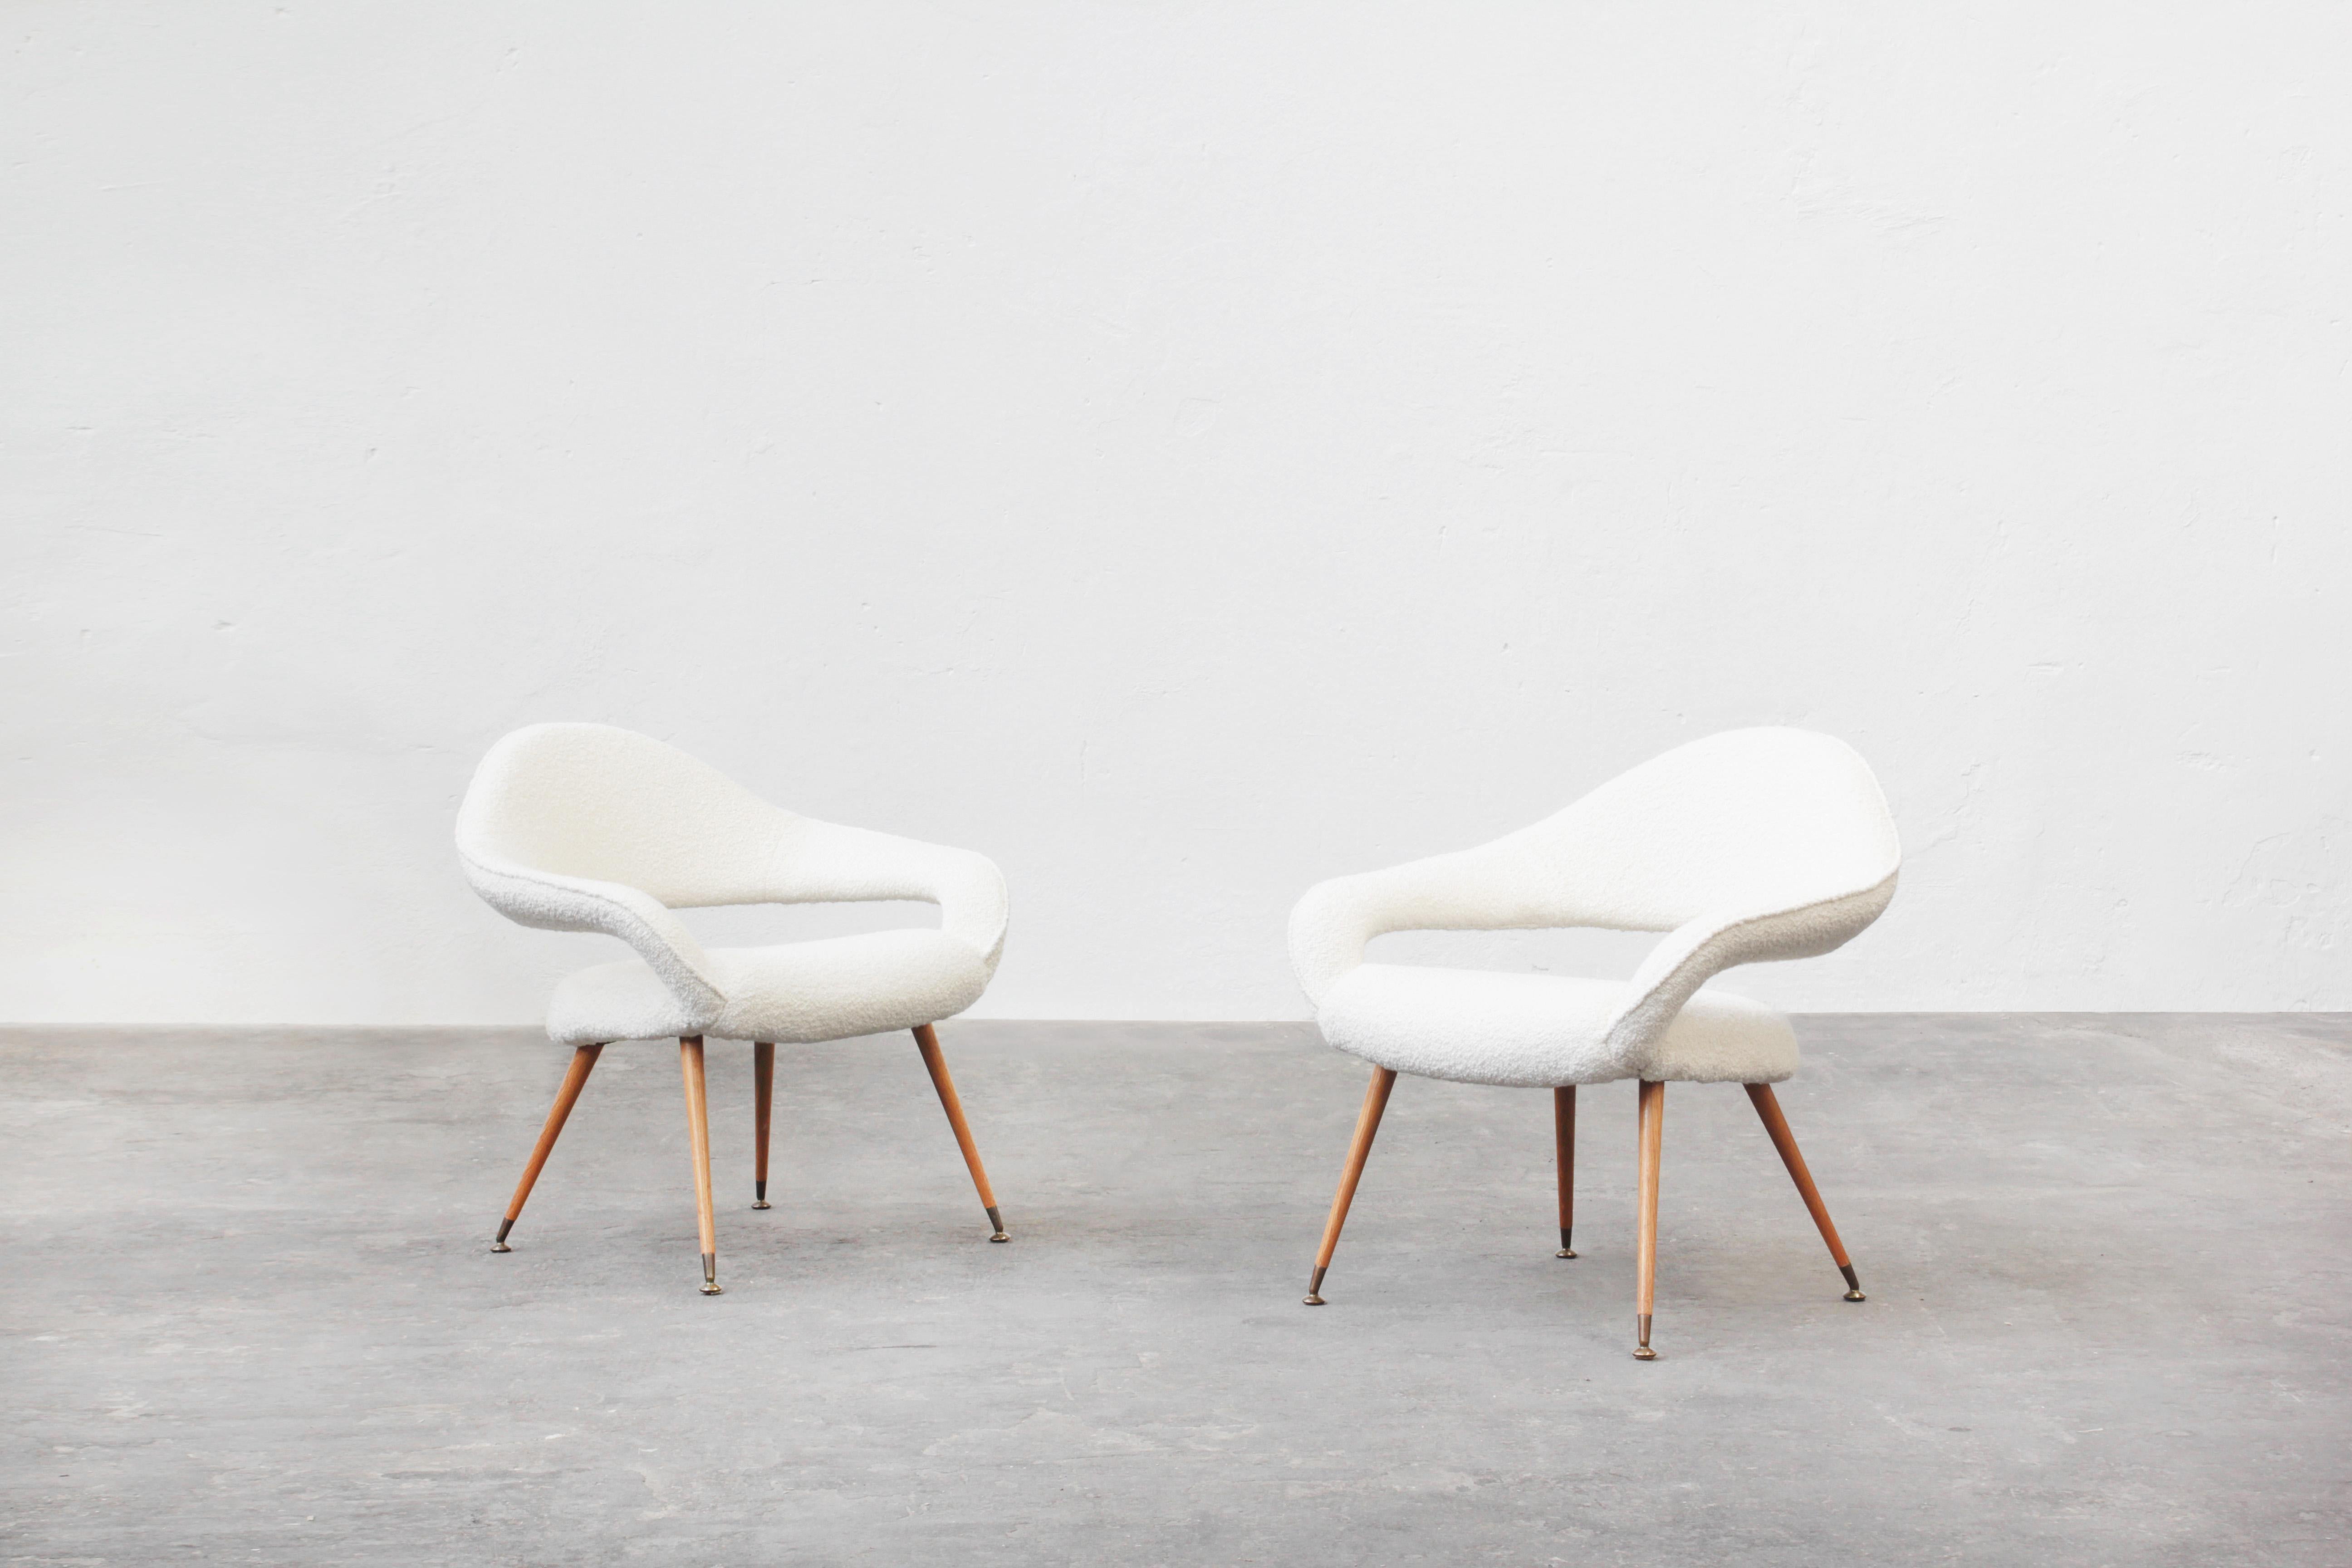 Très belle et iconique paire de chaises longues rares conçues par Gastone Rinaldi en 1954, Italie.

La forme des fauteuils est sculpturale, unique et extraordinaire : les deux délicats accoudoirs fusionnent pour former un dossier aux contours très